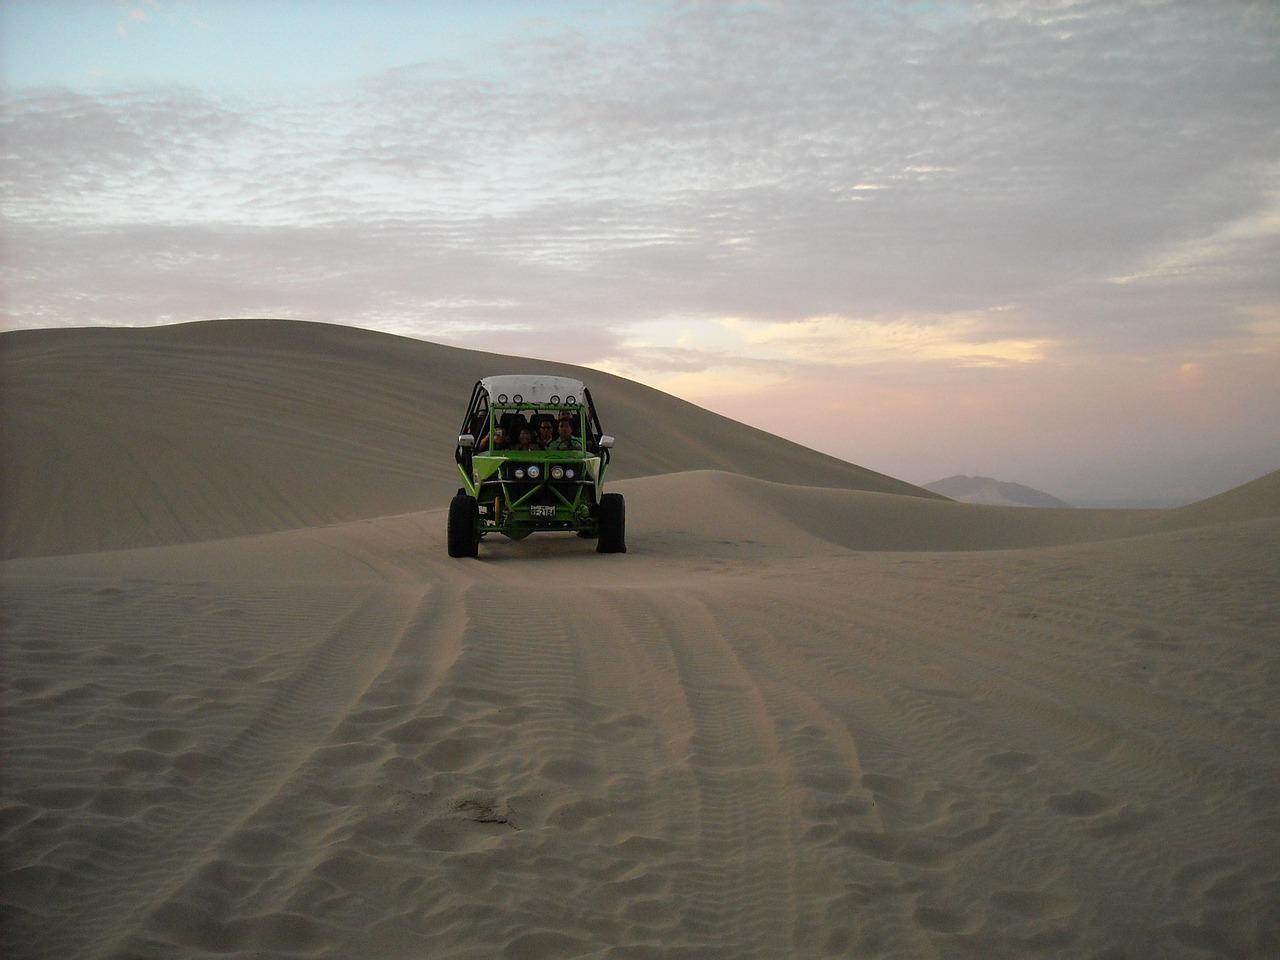 desert sandboarding huacachina free photo